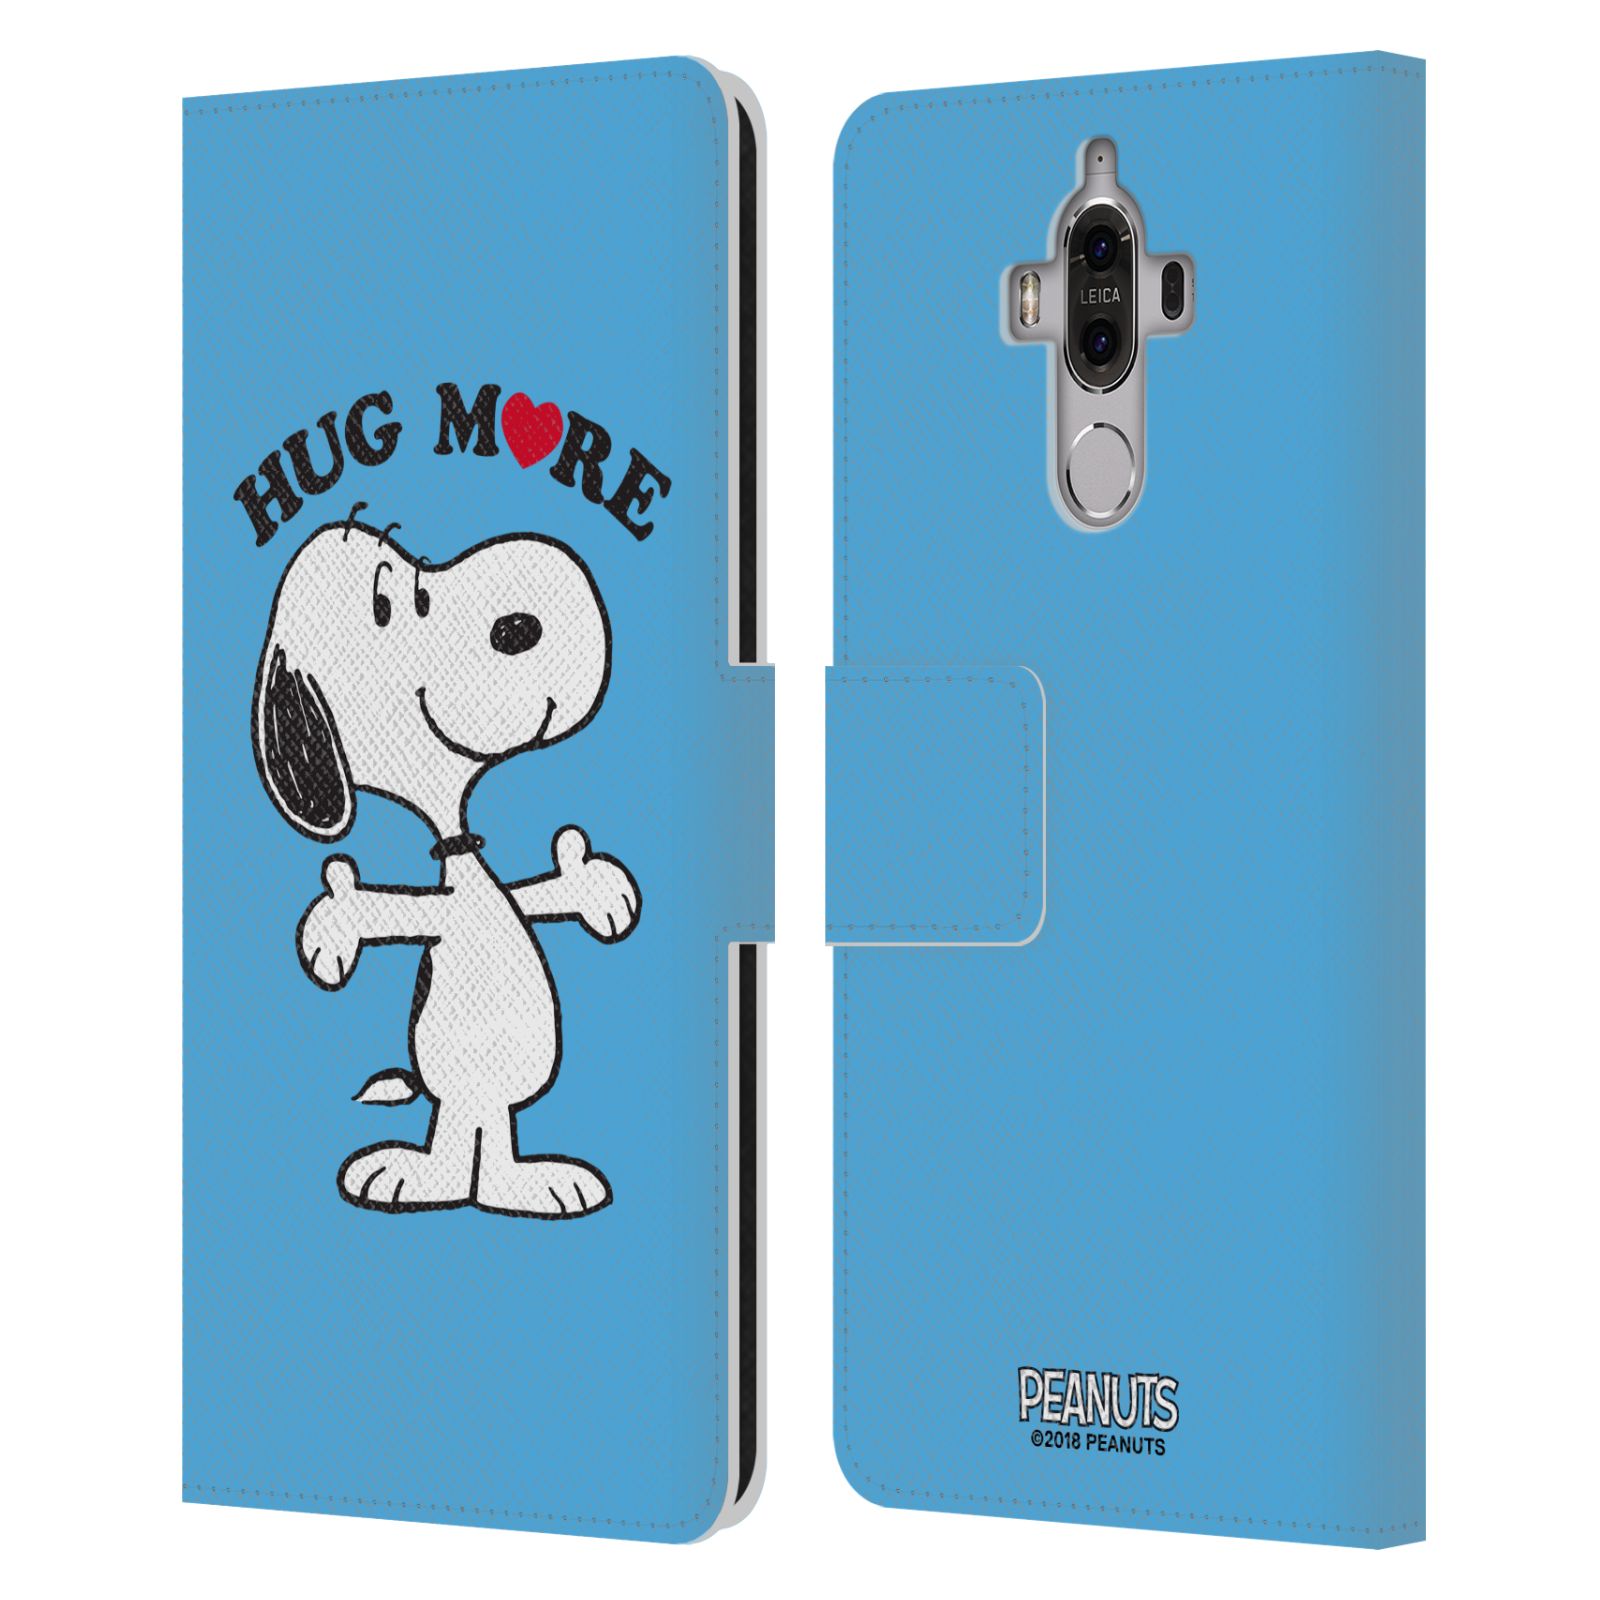 Pouzdro na mobil Huawei Mate 9 - Head Case - Peanuts - pejsek snoopy světle modré objetí